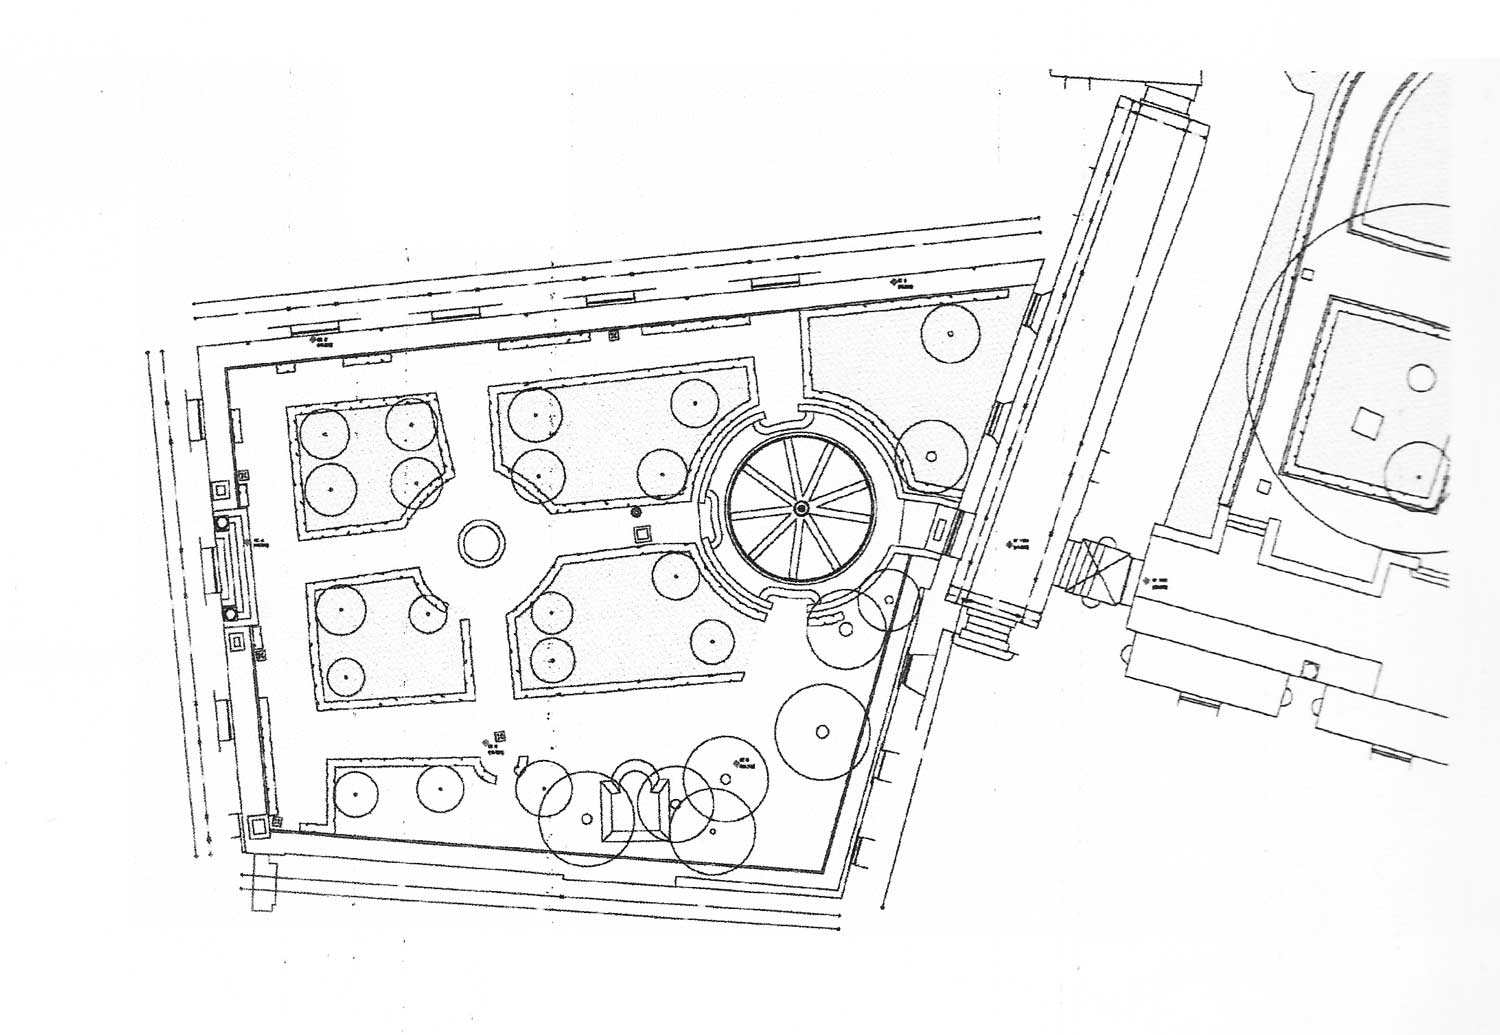 14 - Rilievi diretti e strumentali del Giardino Romano al Campidoglio, Roma - Stralcio planimetrico